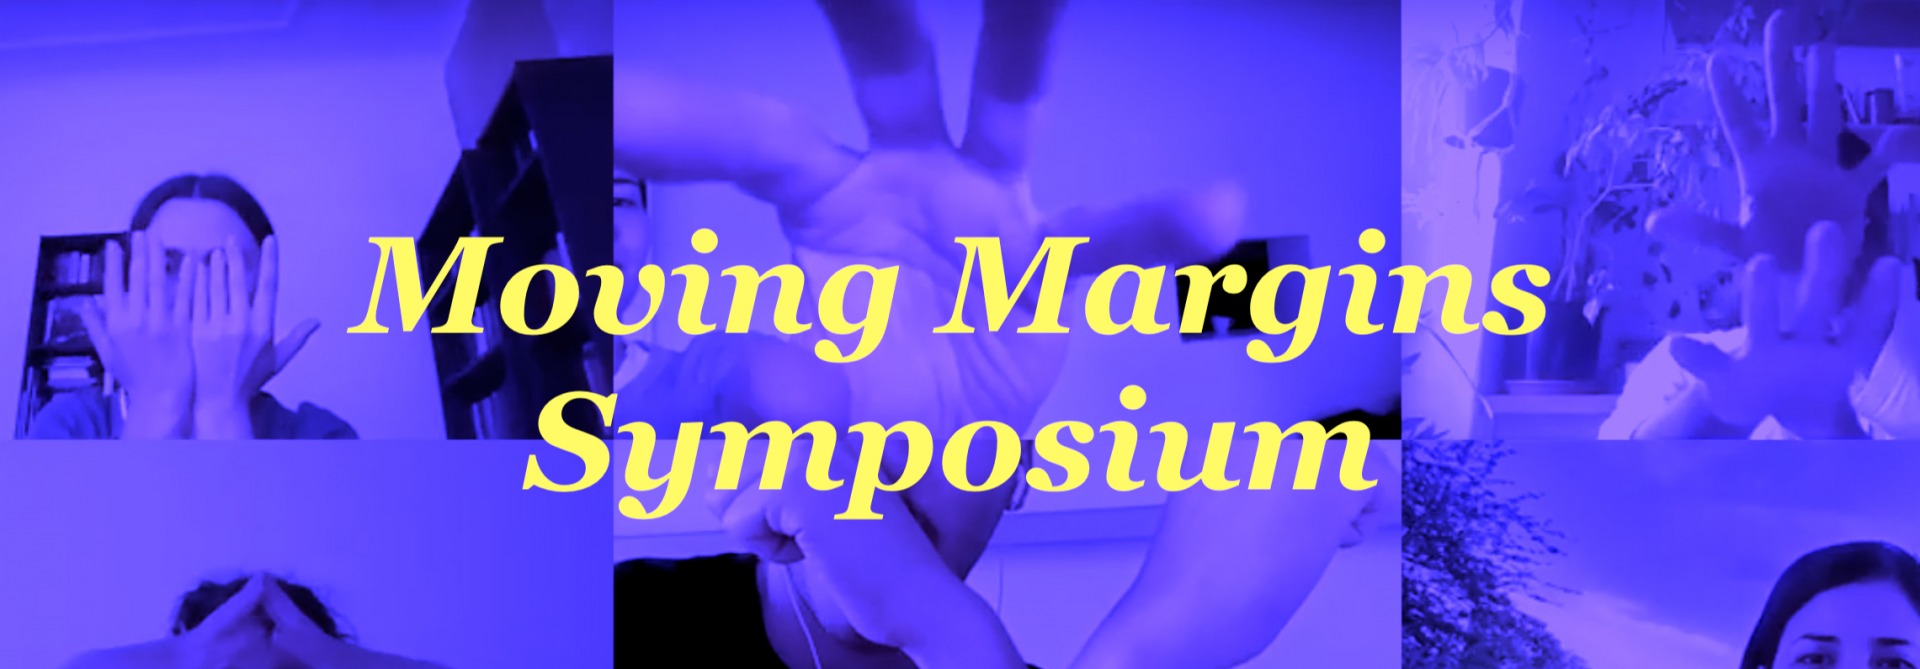 MOVING MARGINS SYMPOSIUM